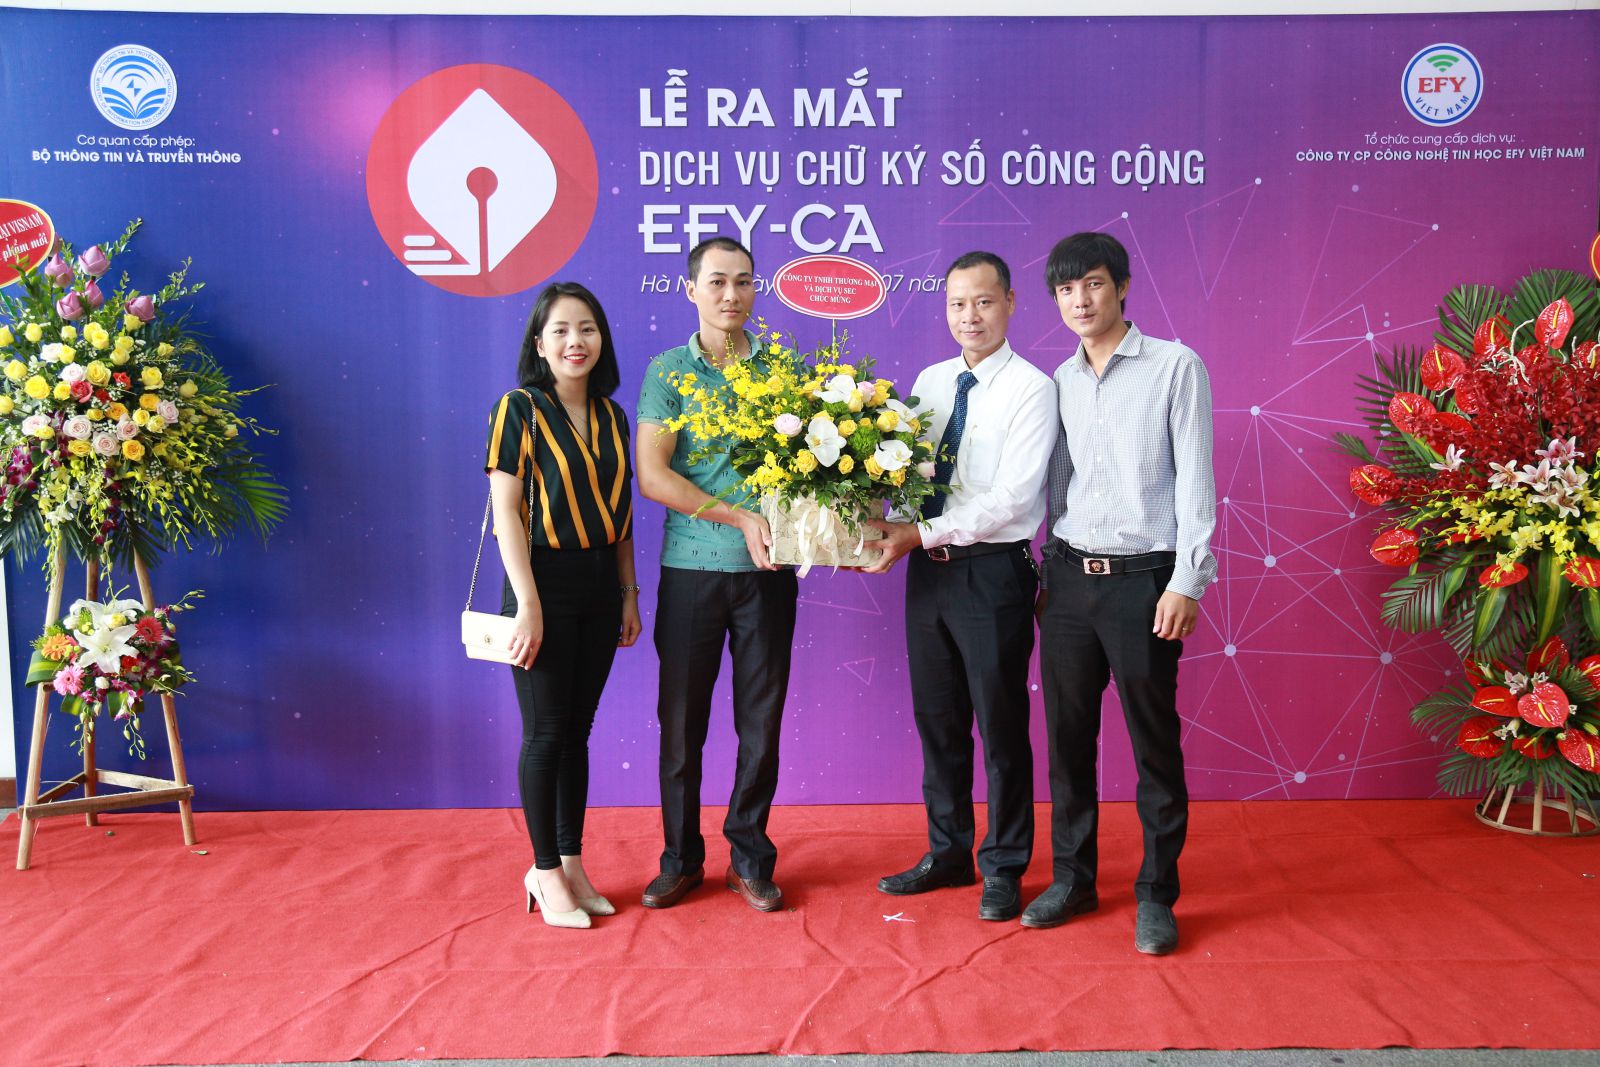 EFY Việt Nam chính thức ra mắt dịch vụ chữ ký số công cộng 